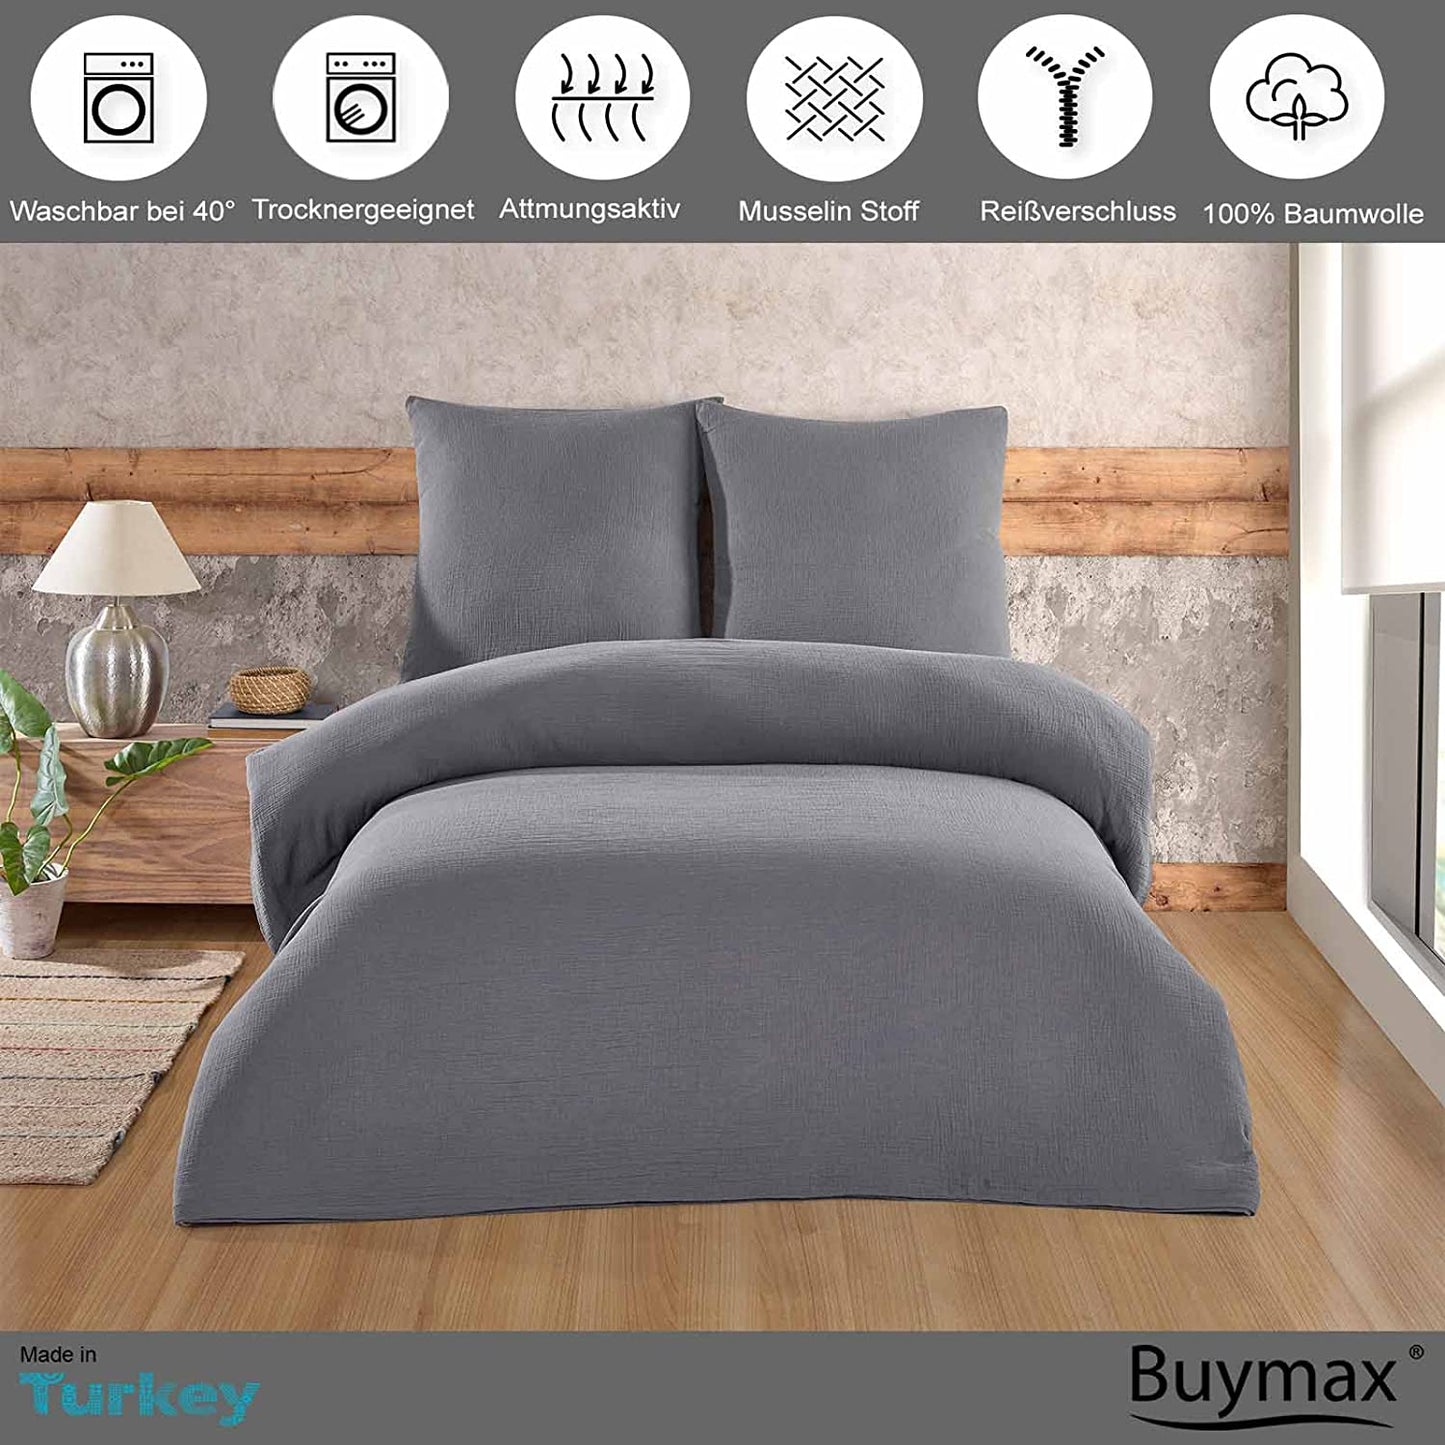 Buymax® Musselin Bettwäsche Set aus Baumwolle, Grau, 135x200 cm